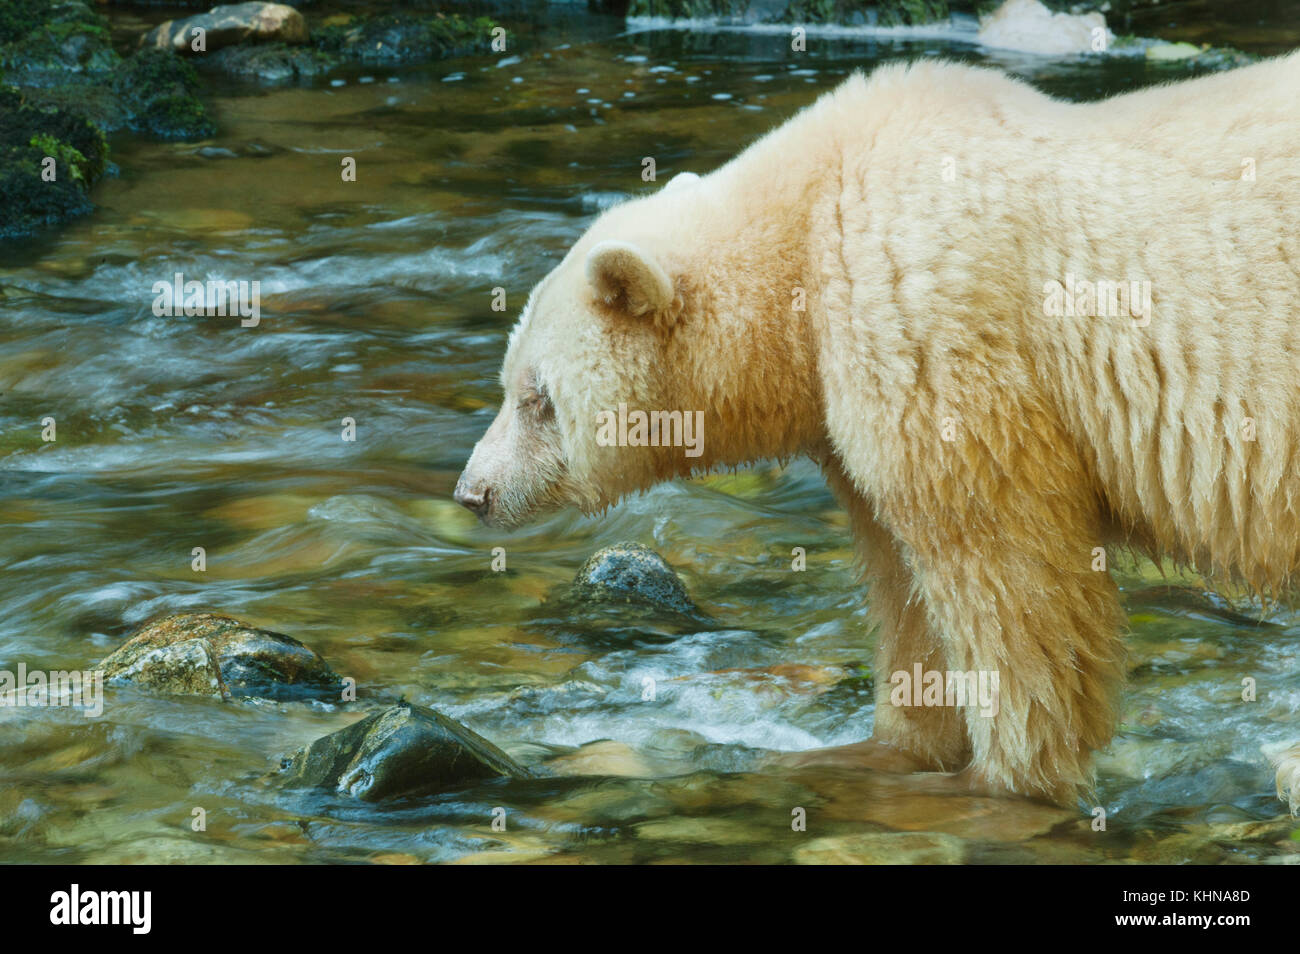 Kermode oder "Spirit" Bär (Ursus americanus kermodei), weiße Form der amerikanische Schwarzbär, Great Bear Rainforest, BC Kanada Stockfoto